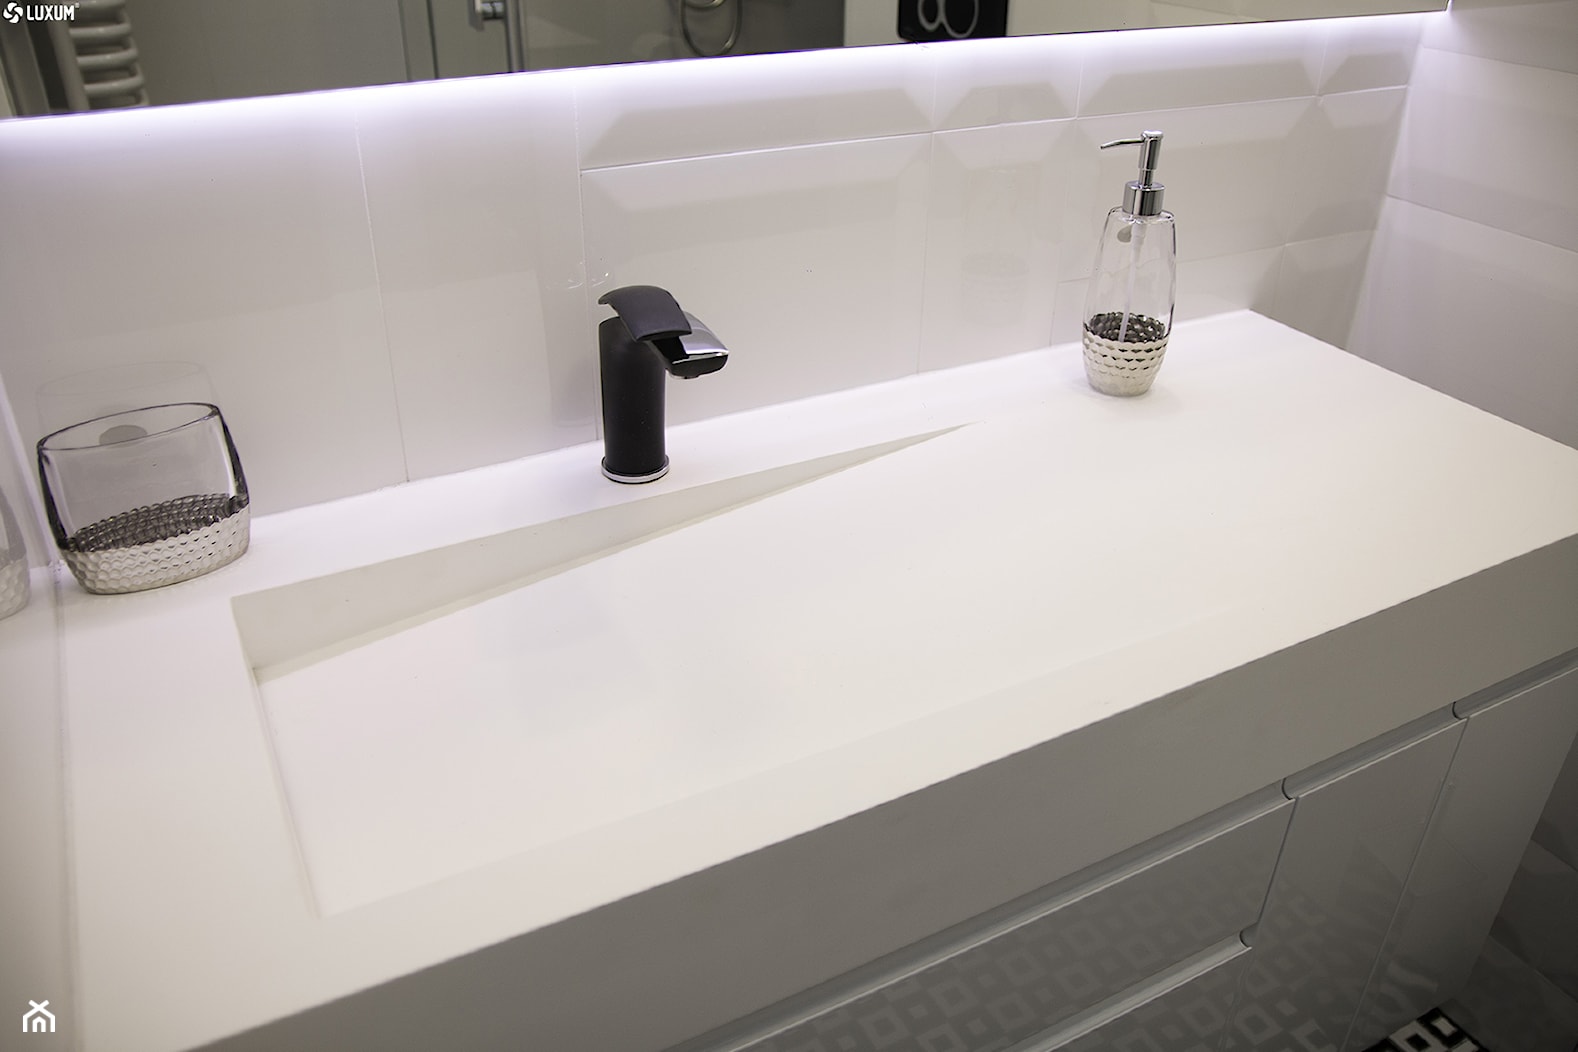 Prostokątna umywalka z odpływem liniowym od Luxum. - Mała średnia łazienka, styl skandynawski - zdjęcie od Luxum - Homebook